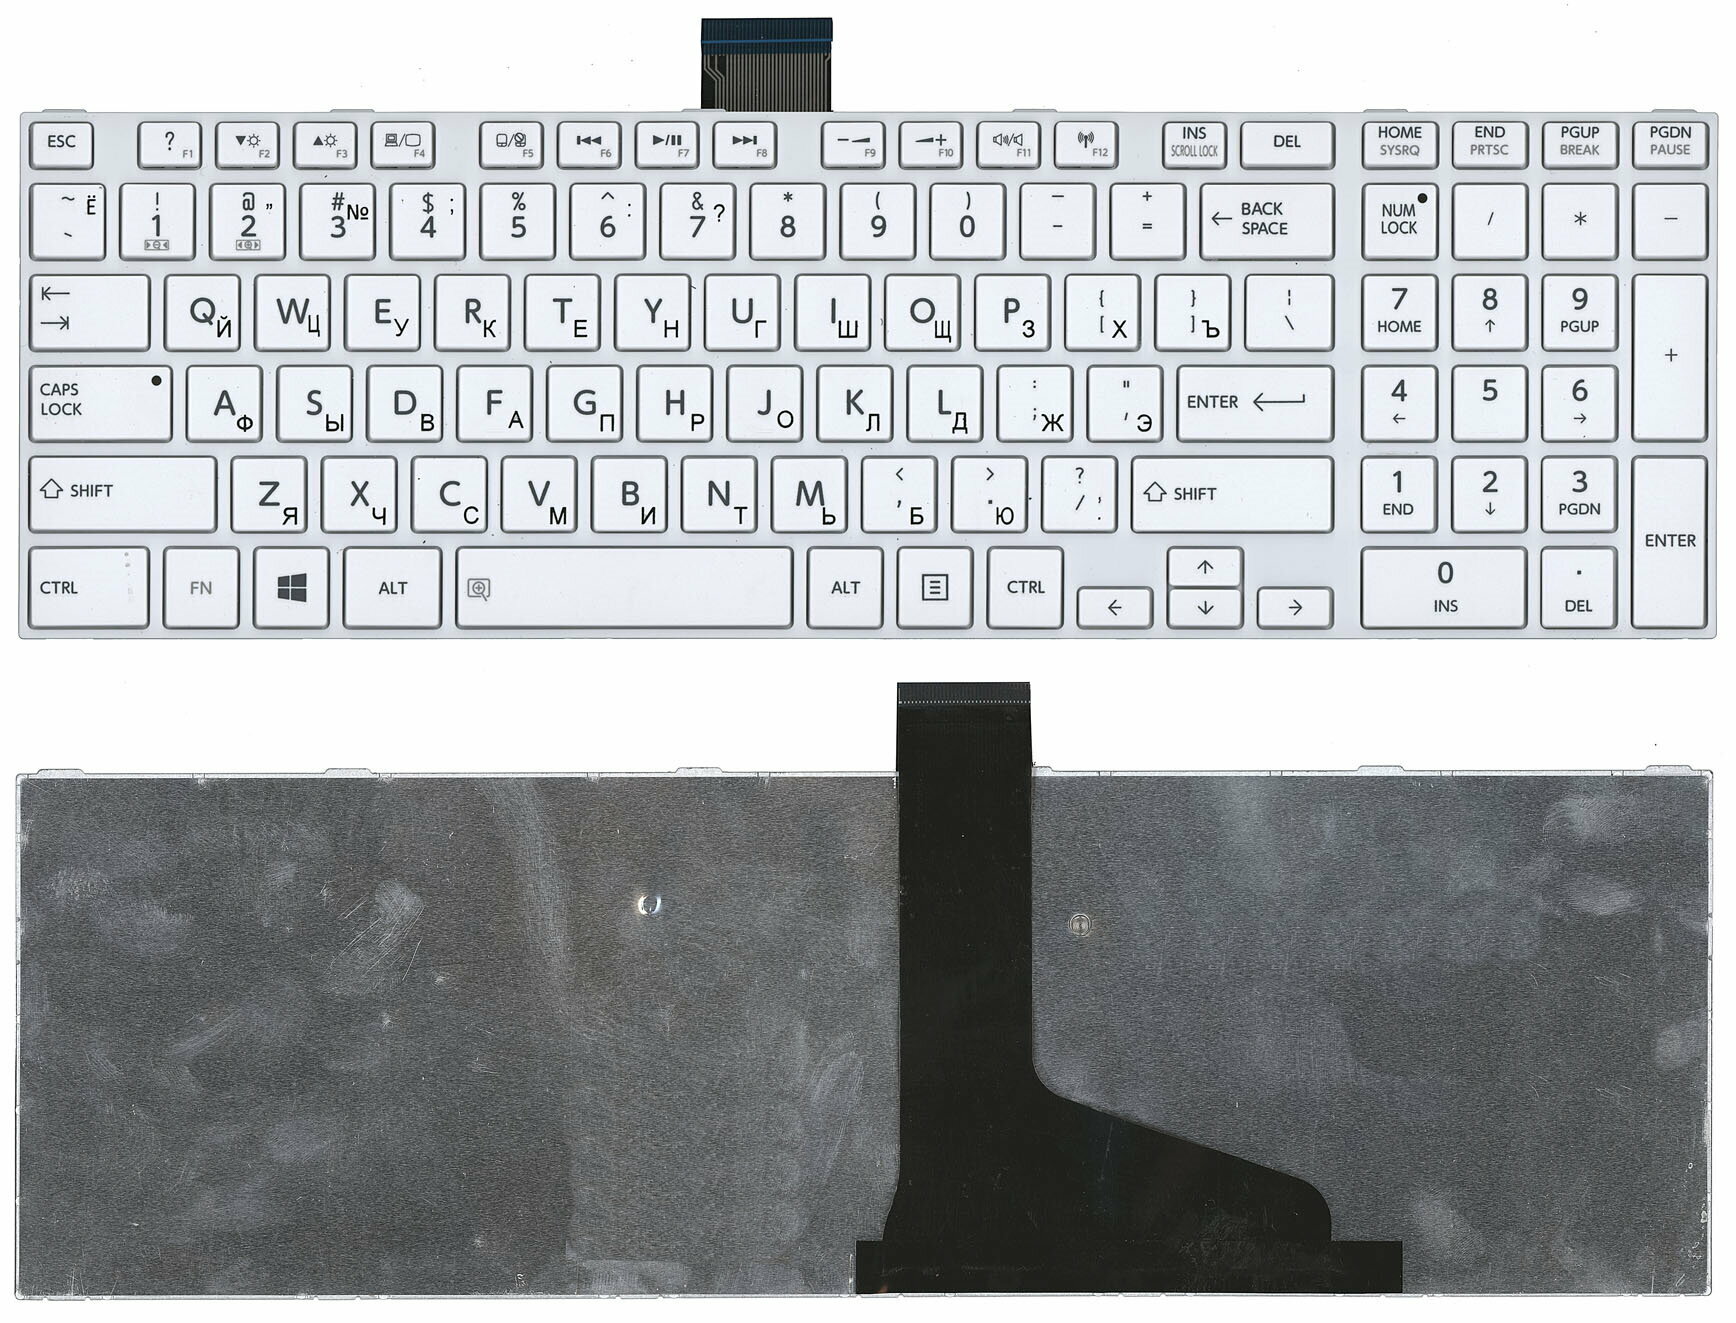 Клавиатура для ноутбука Toshiba Satellite L850 L875 белая